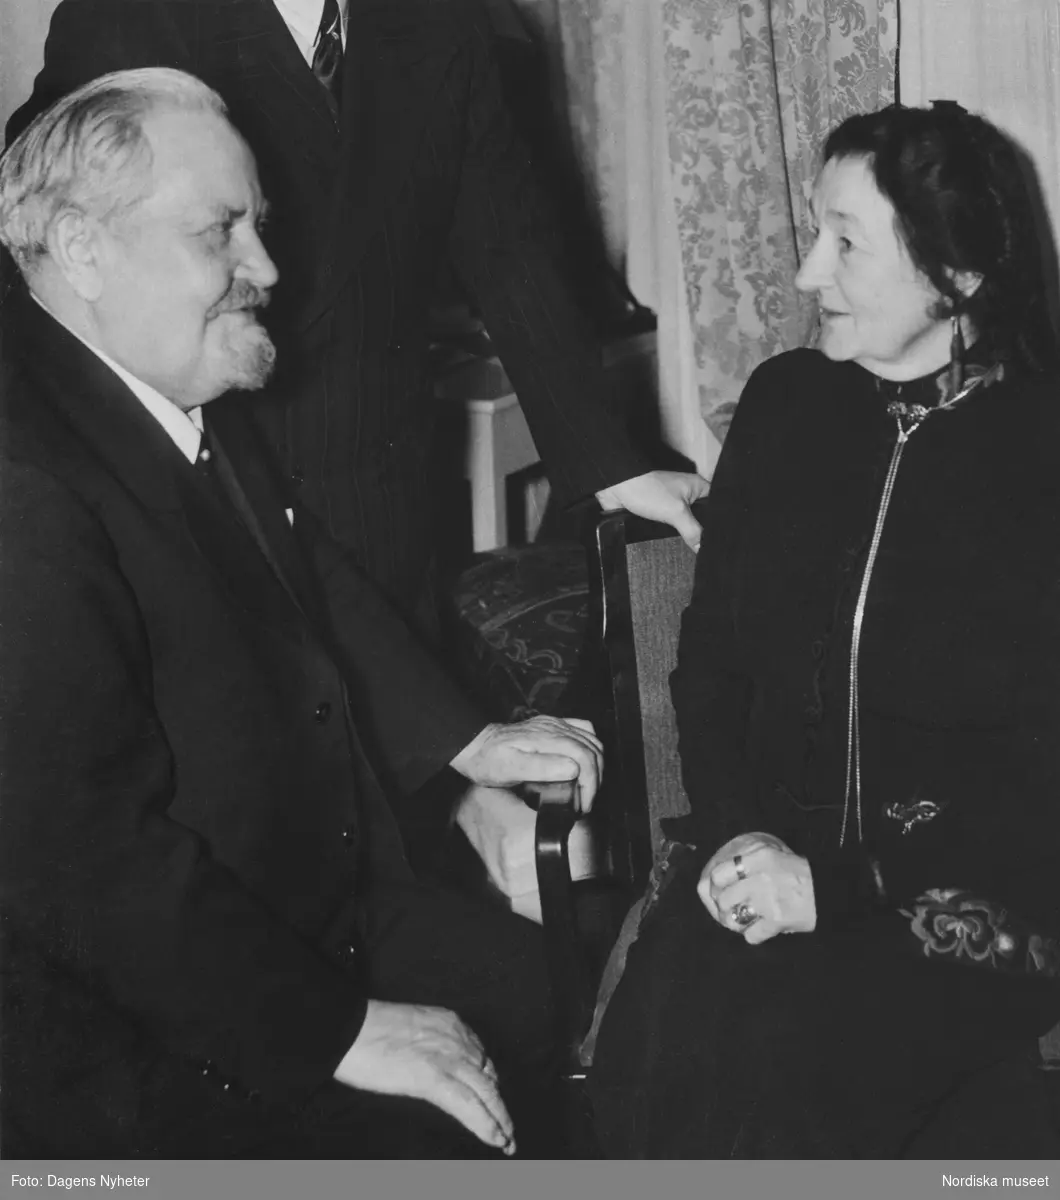 Konstnären Karl Tirén och professorskan Emilie Demant Hatt på Hotel Stockholm i samband med Nordiska museets Lapplandsafton 4 december 1940.